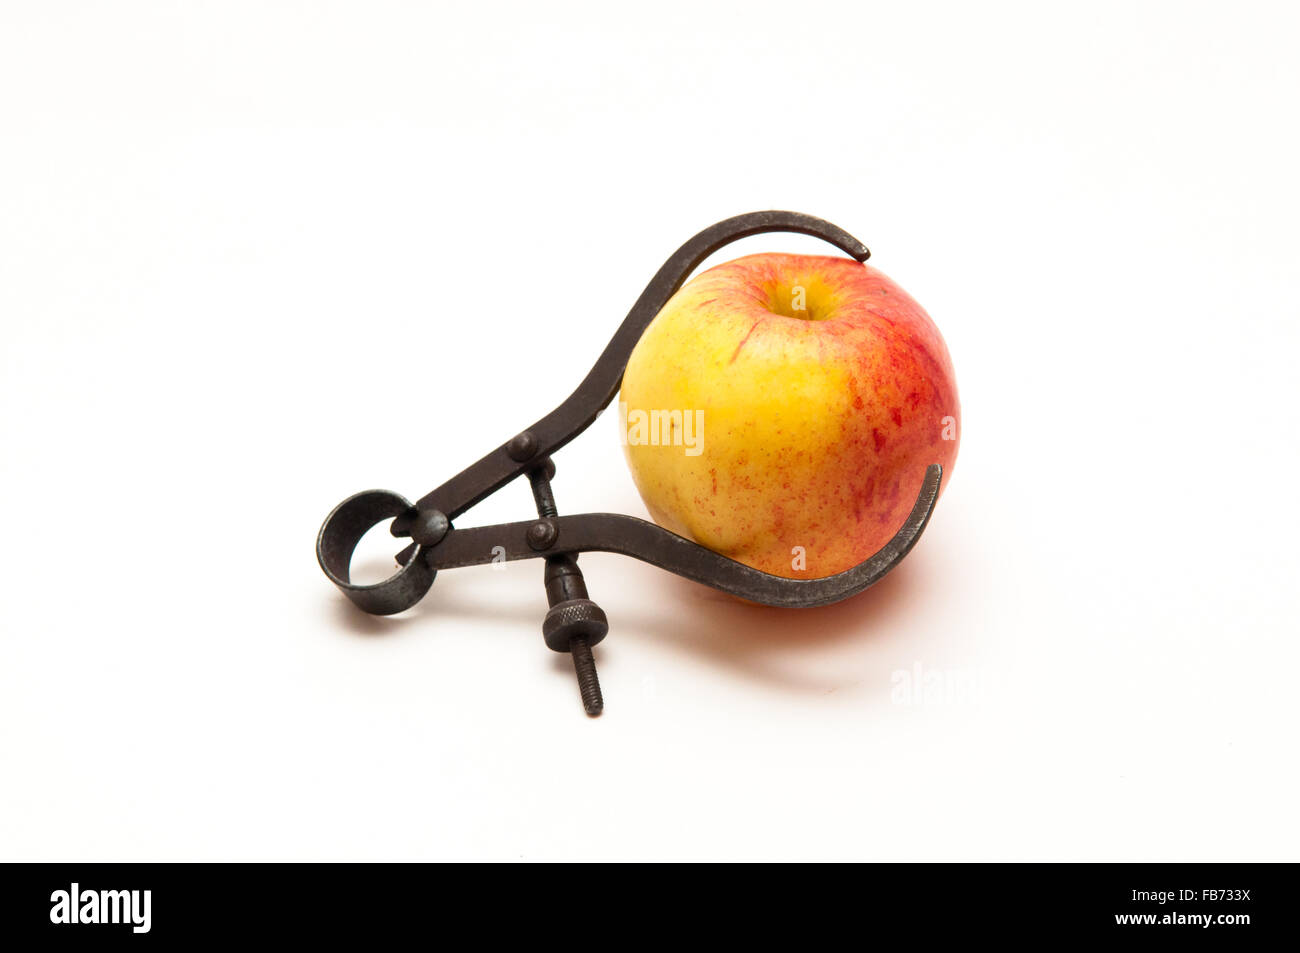 Manzana fresca que se miden para representar la pérdida de peso Foto de stock